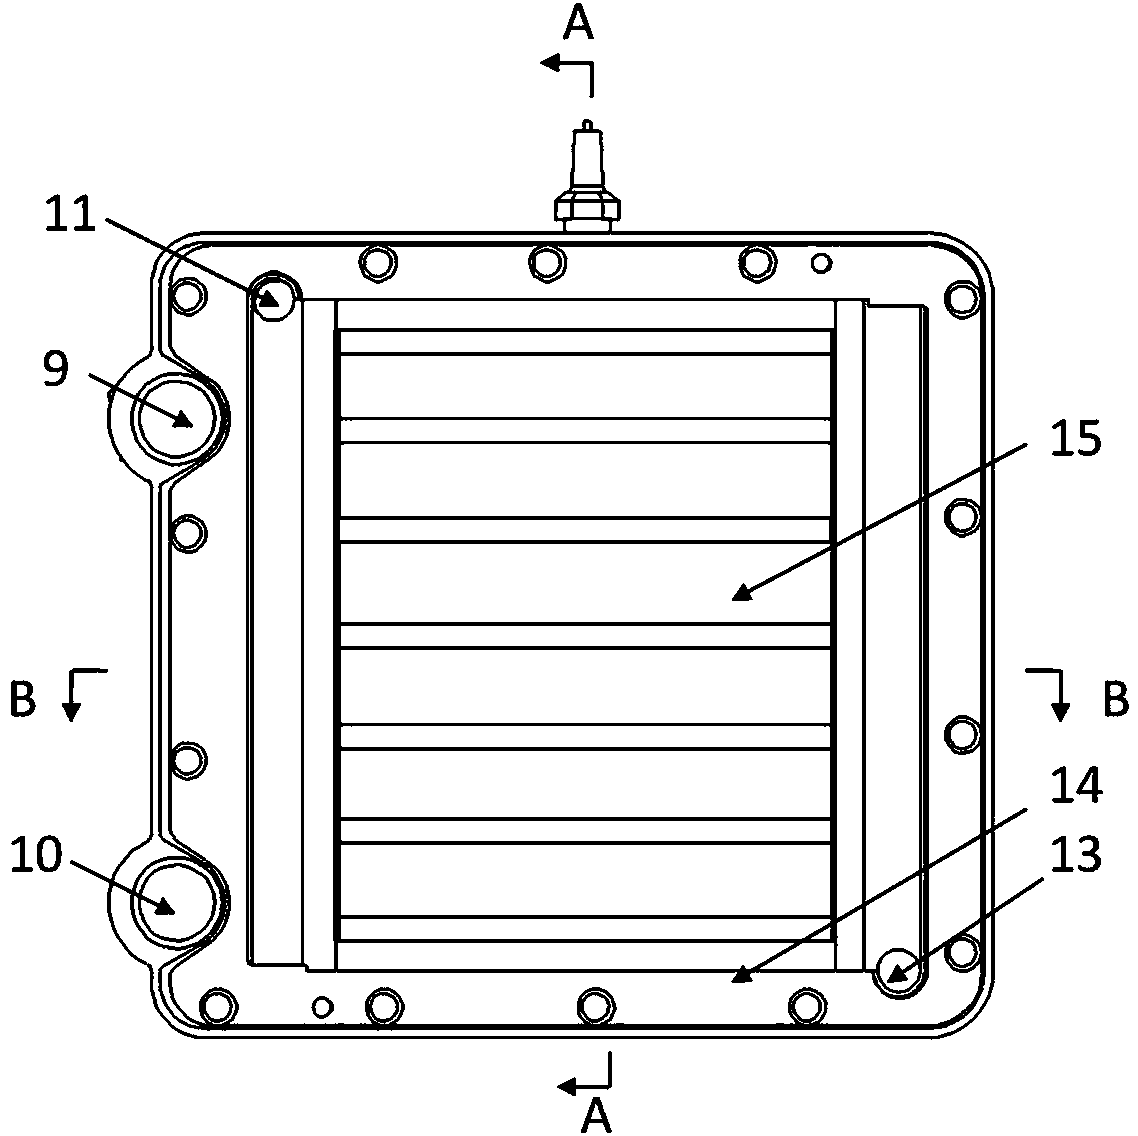 Modularized plate-type ozone generator